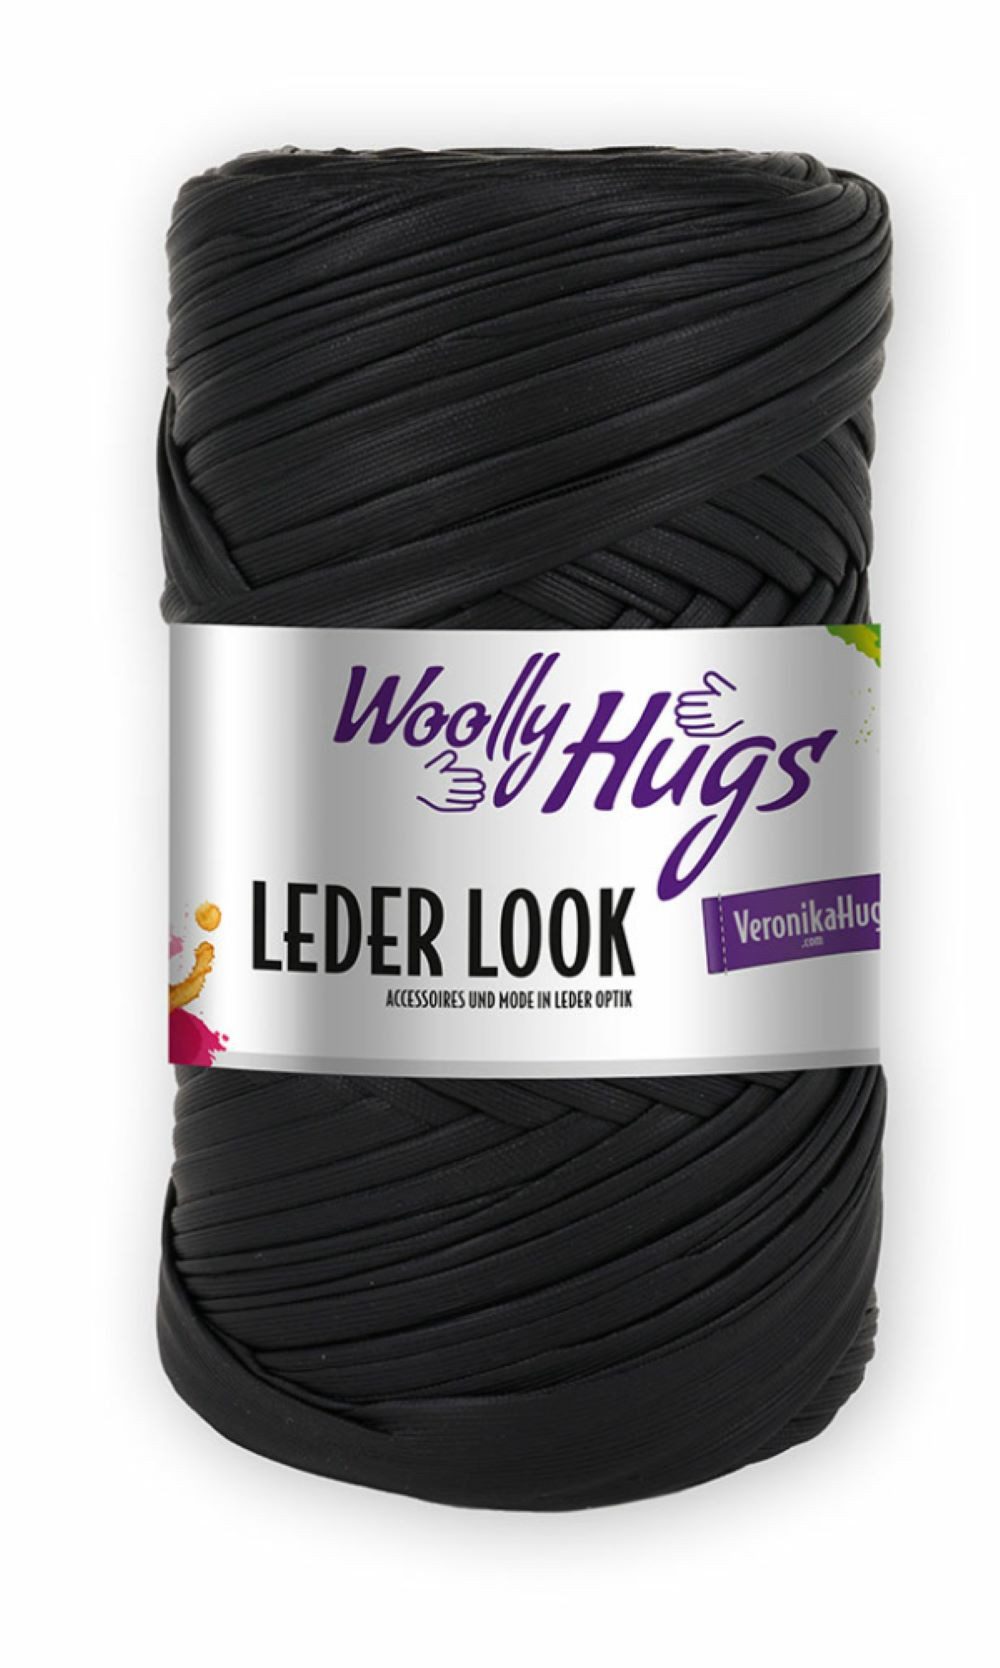 Woolly Hugs NEU!!! 200g Woolly Hugs "Leder Look" Effektgarn, 80,00 m, Lederoptik